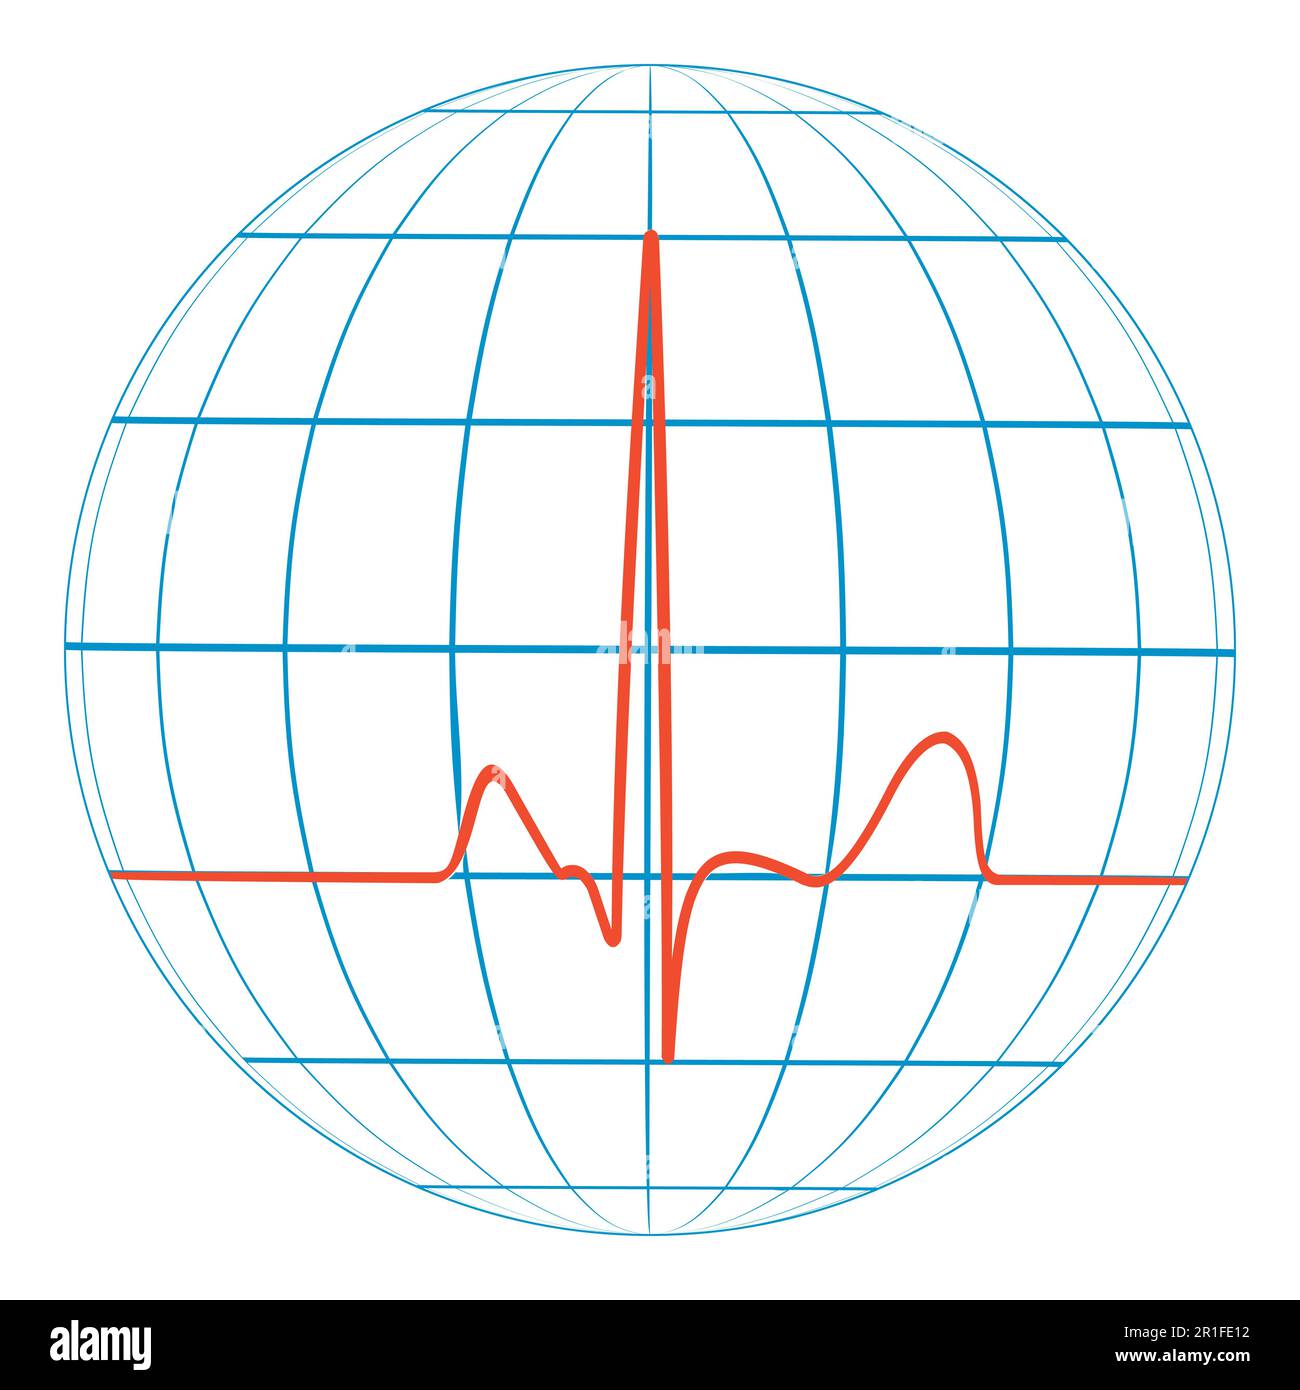 Cardio pianeta terra cuore impulso. Cardiogramma. Linea vettoriale dell'impulso con il pianeta Illustrazione Vettoriale